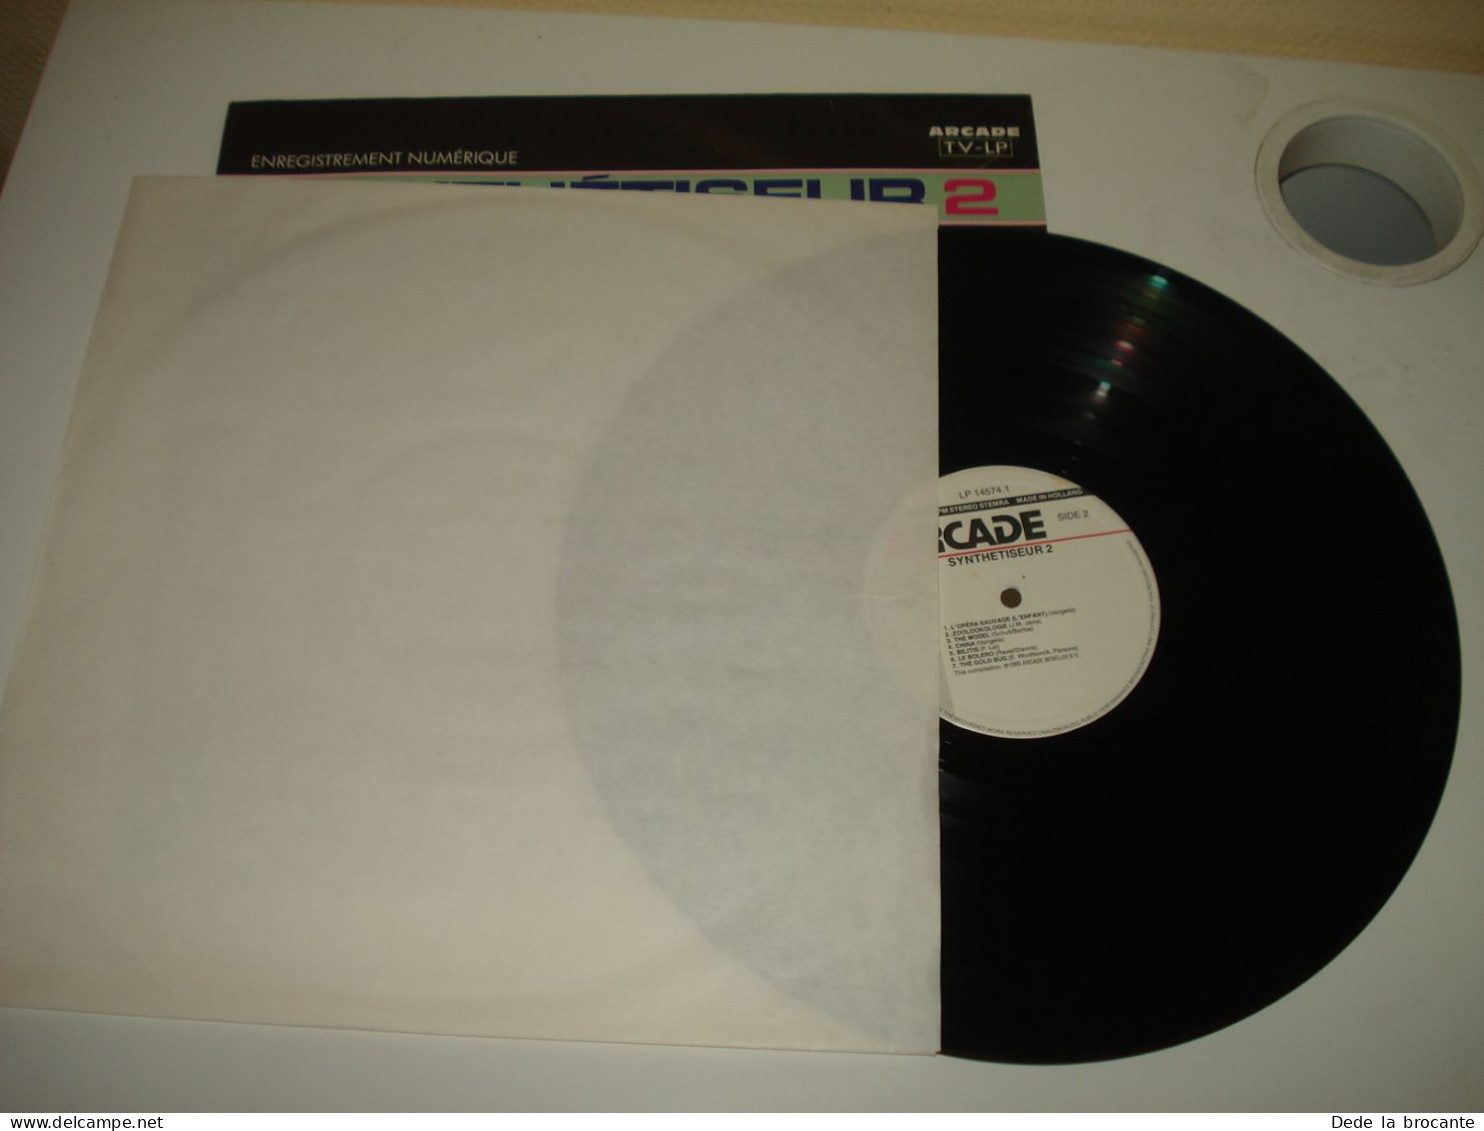 B14 / Starink – Synthétiseur 2 – Grands Thèmes - LP 14574.1 - Fr  1989  NM/EX - Autres & Non Classés